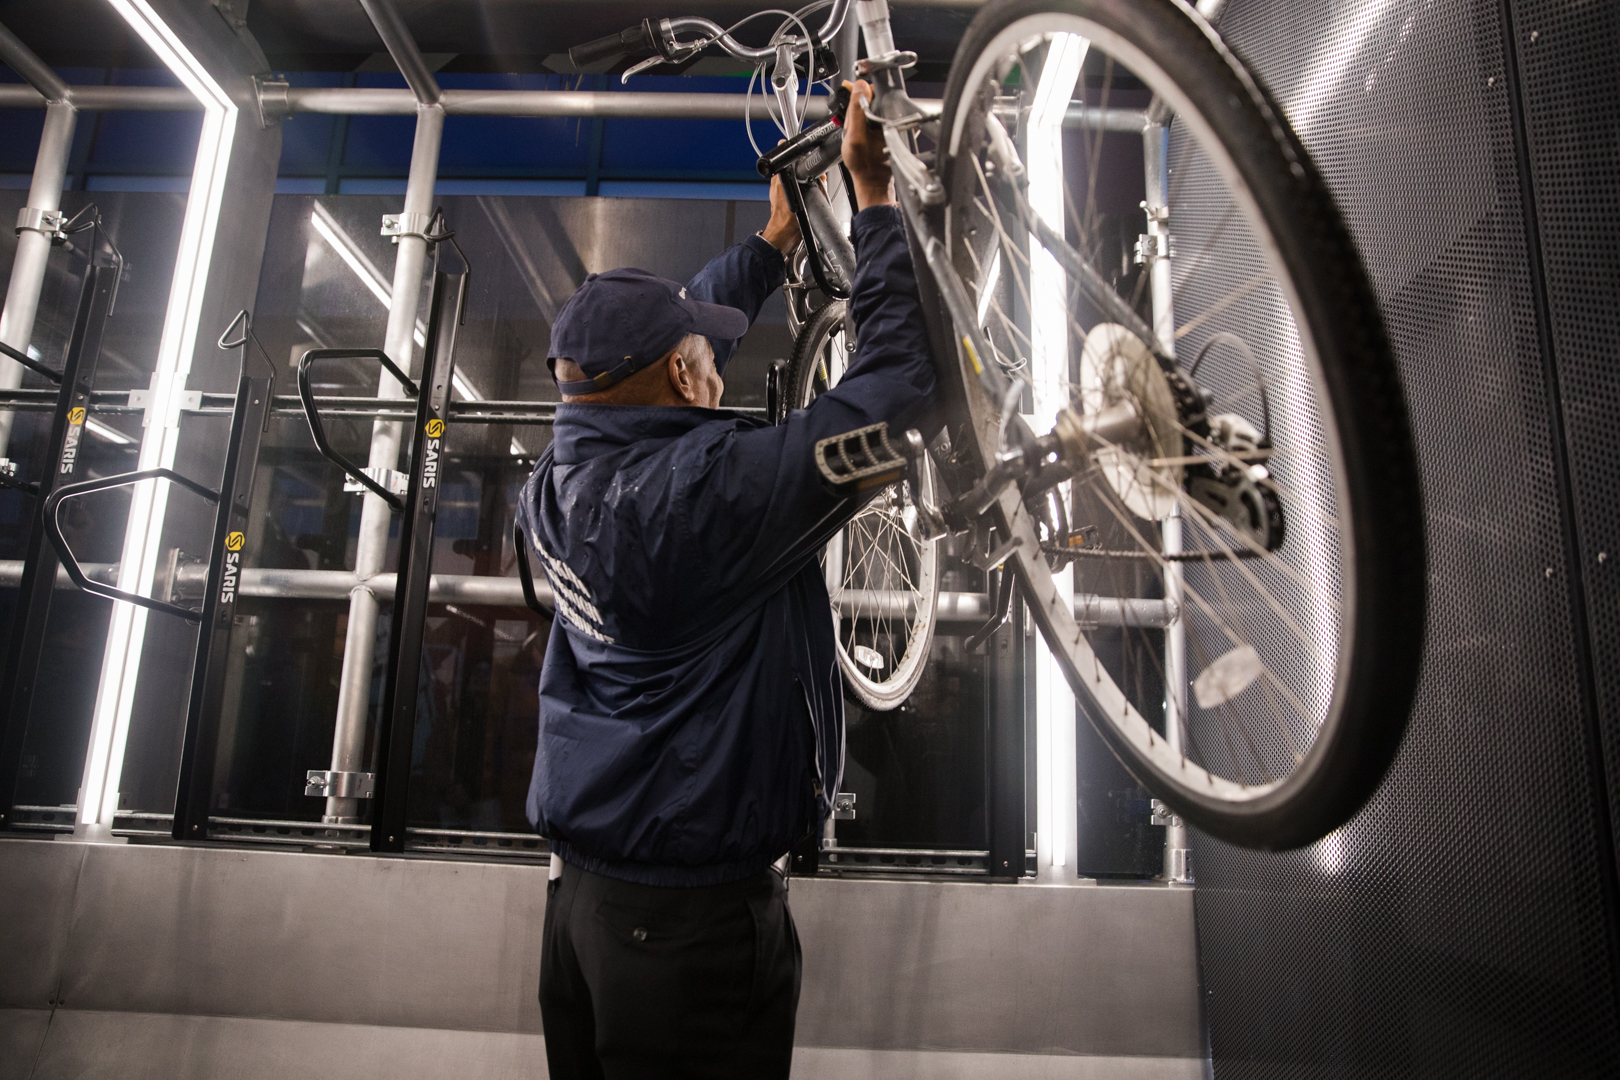 Borough President Eric Adams locks up his bike in the Oonee Pod. Photo: Paul Frangipane/Brooklyn Eagle